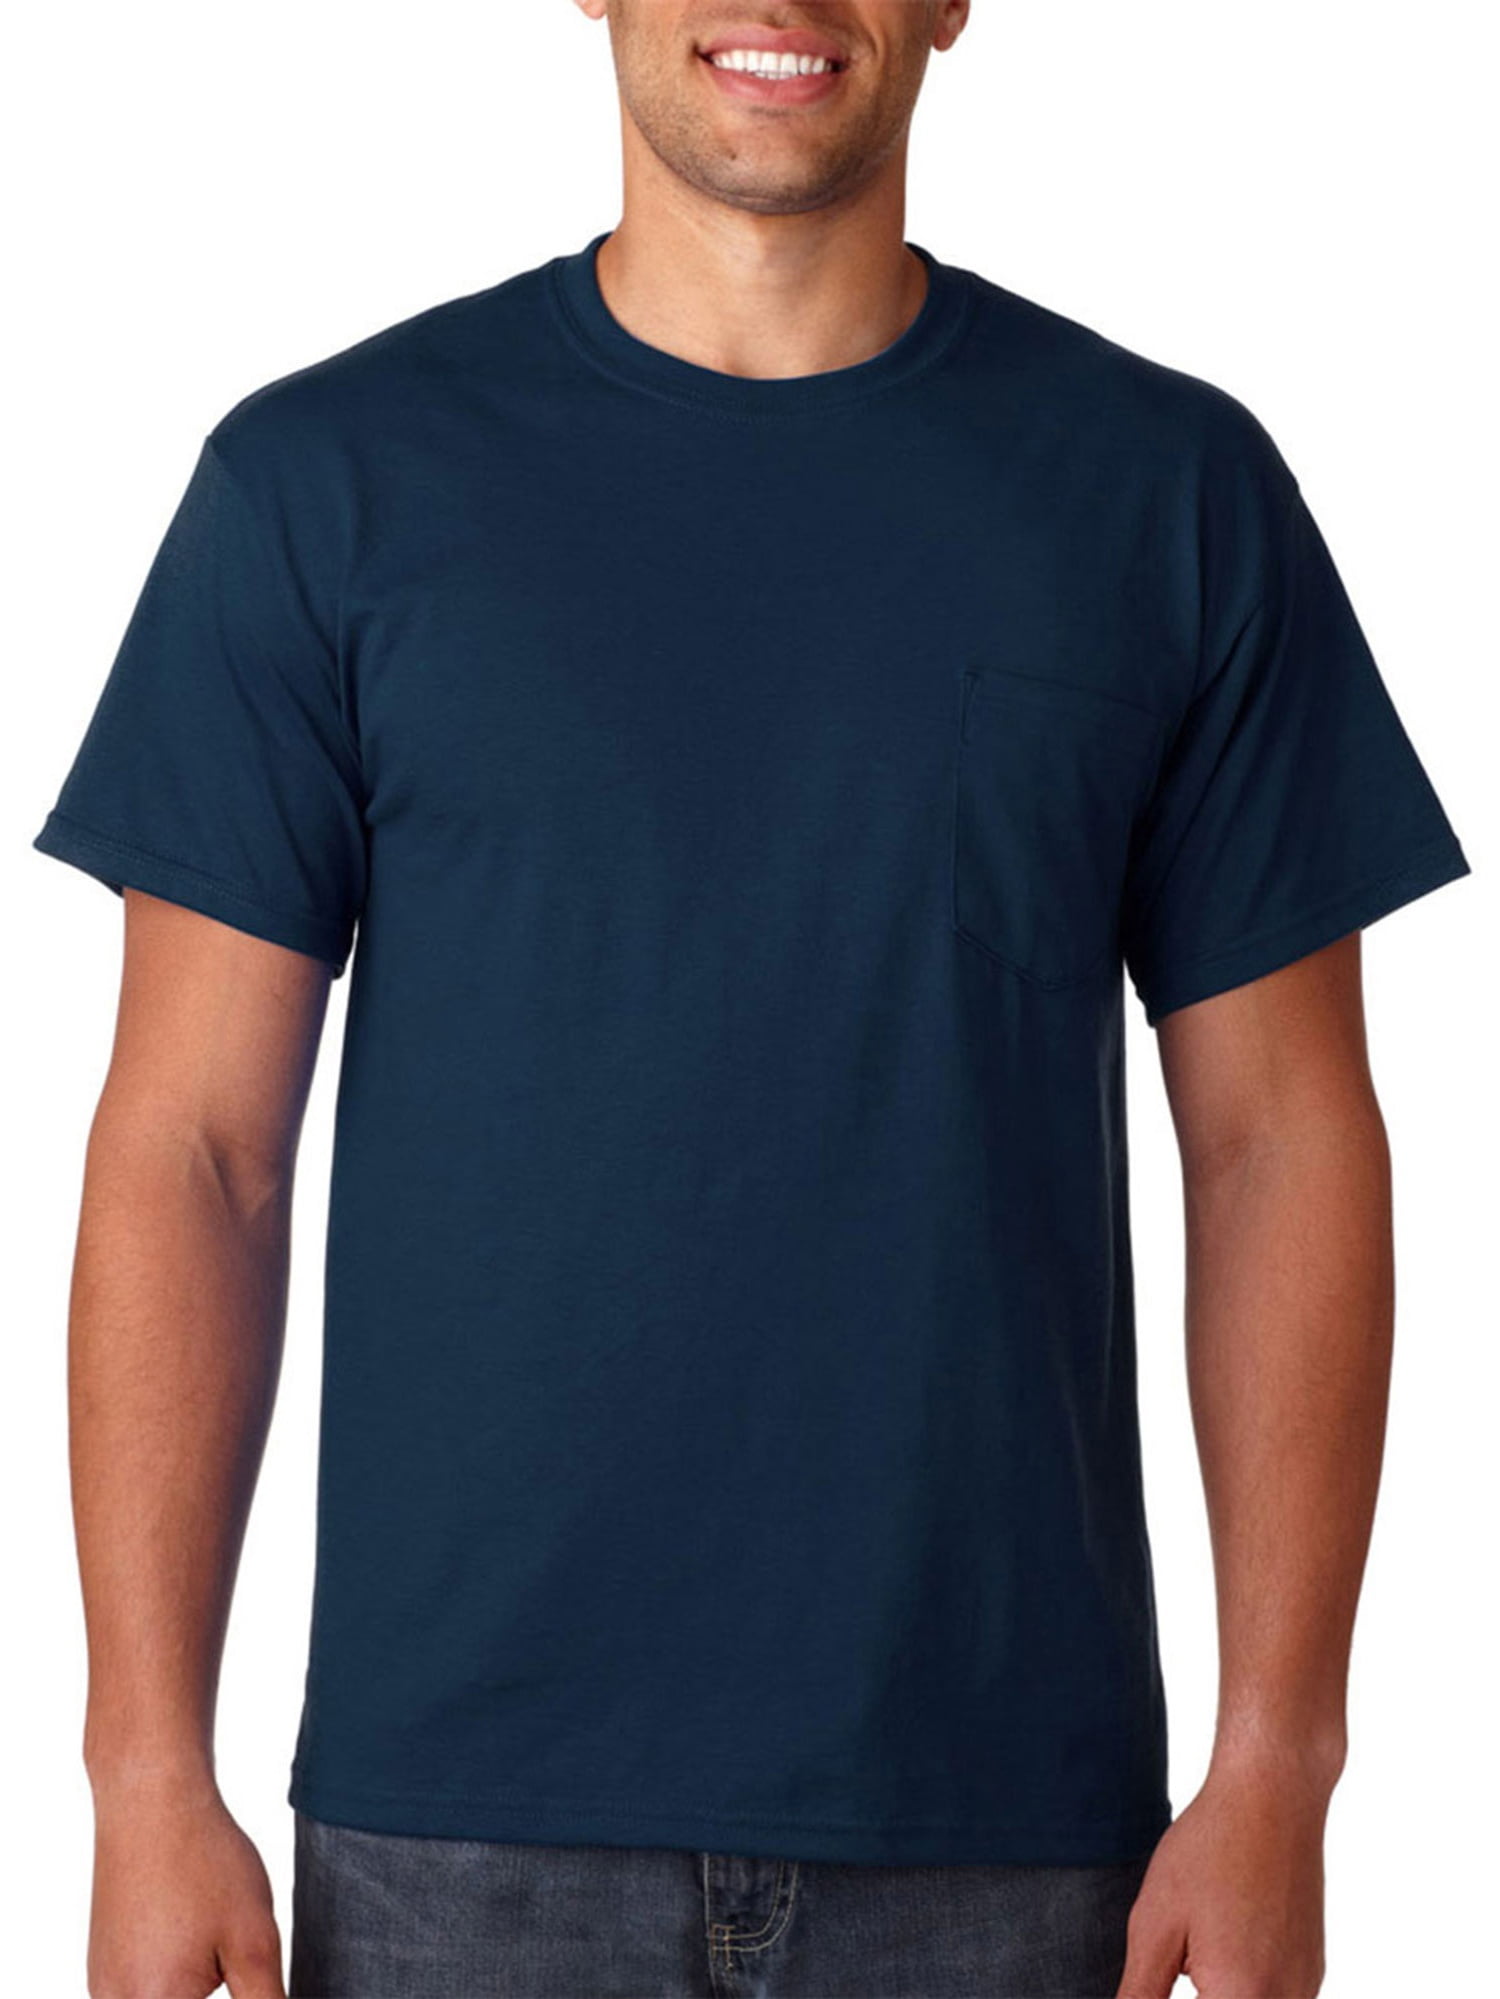 Gildan Mens Seamless Chest Pocket Comfort jersey T-Shirt, Navy, 3XL ...